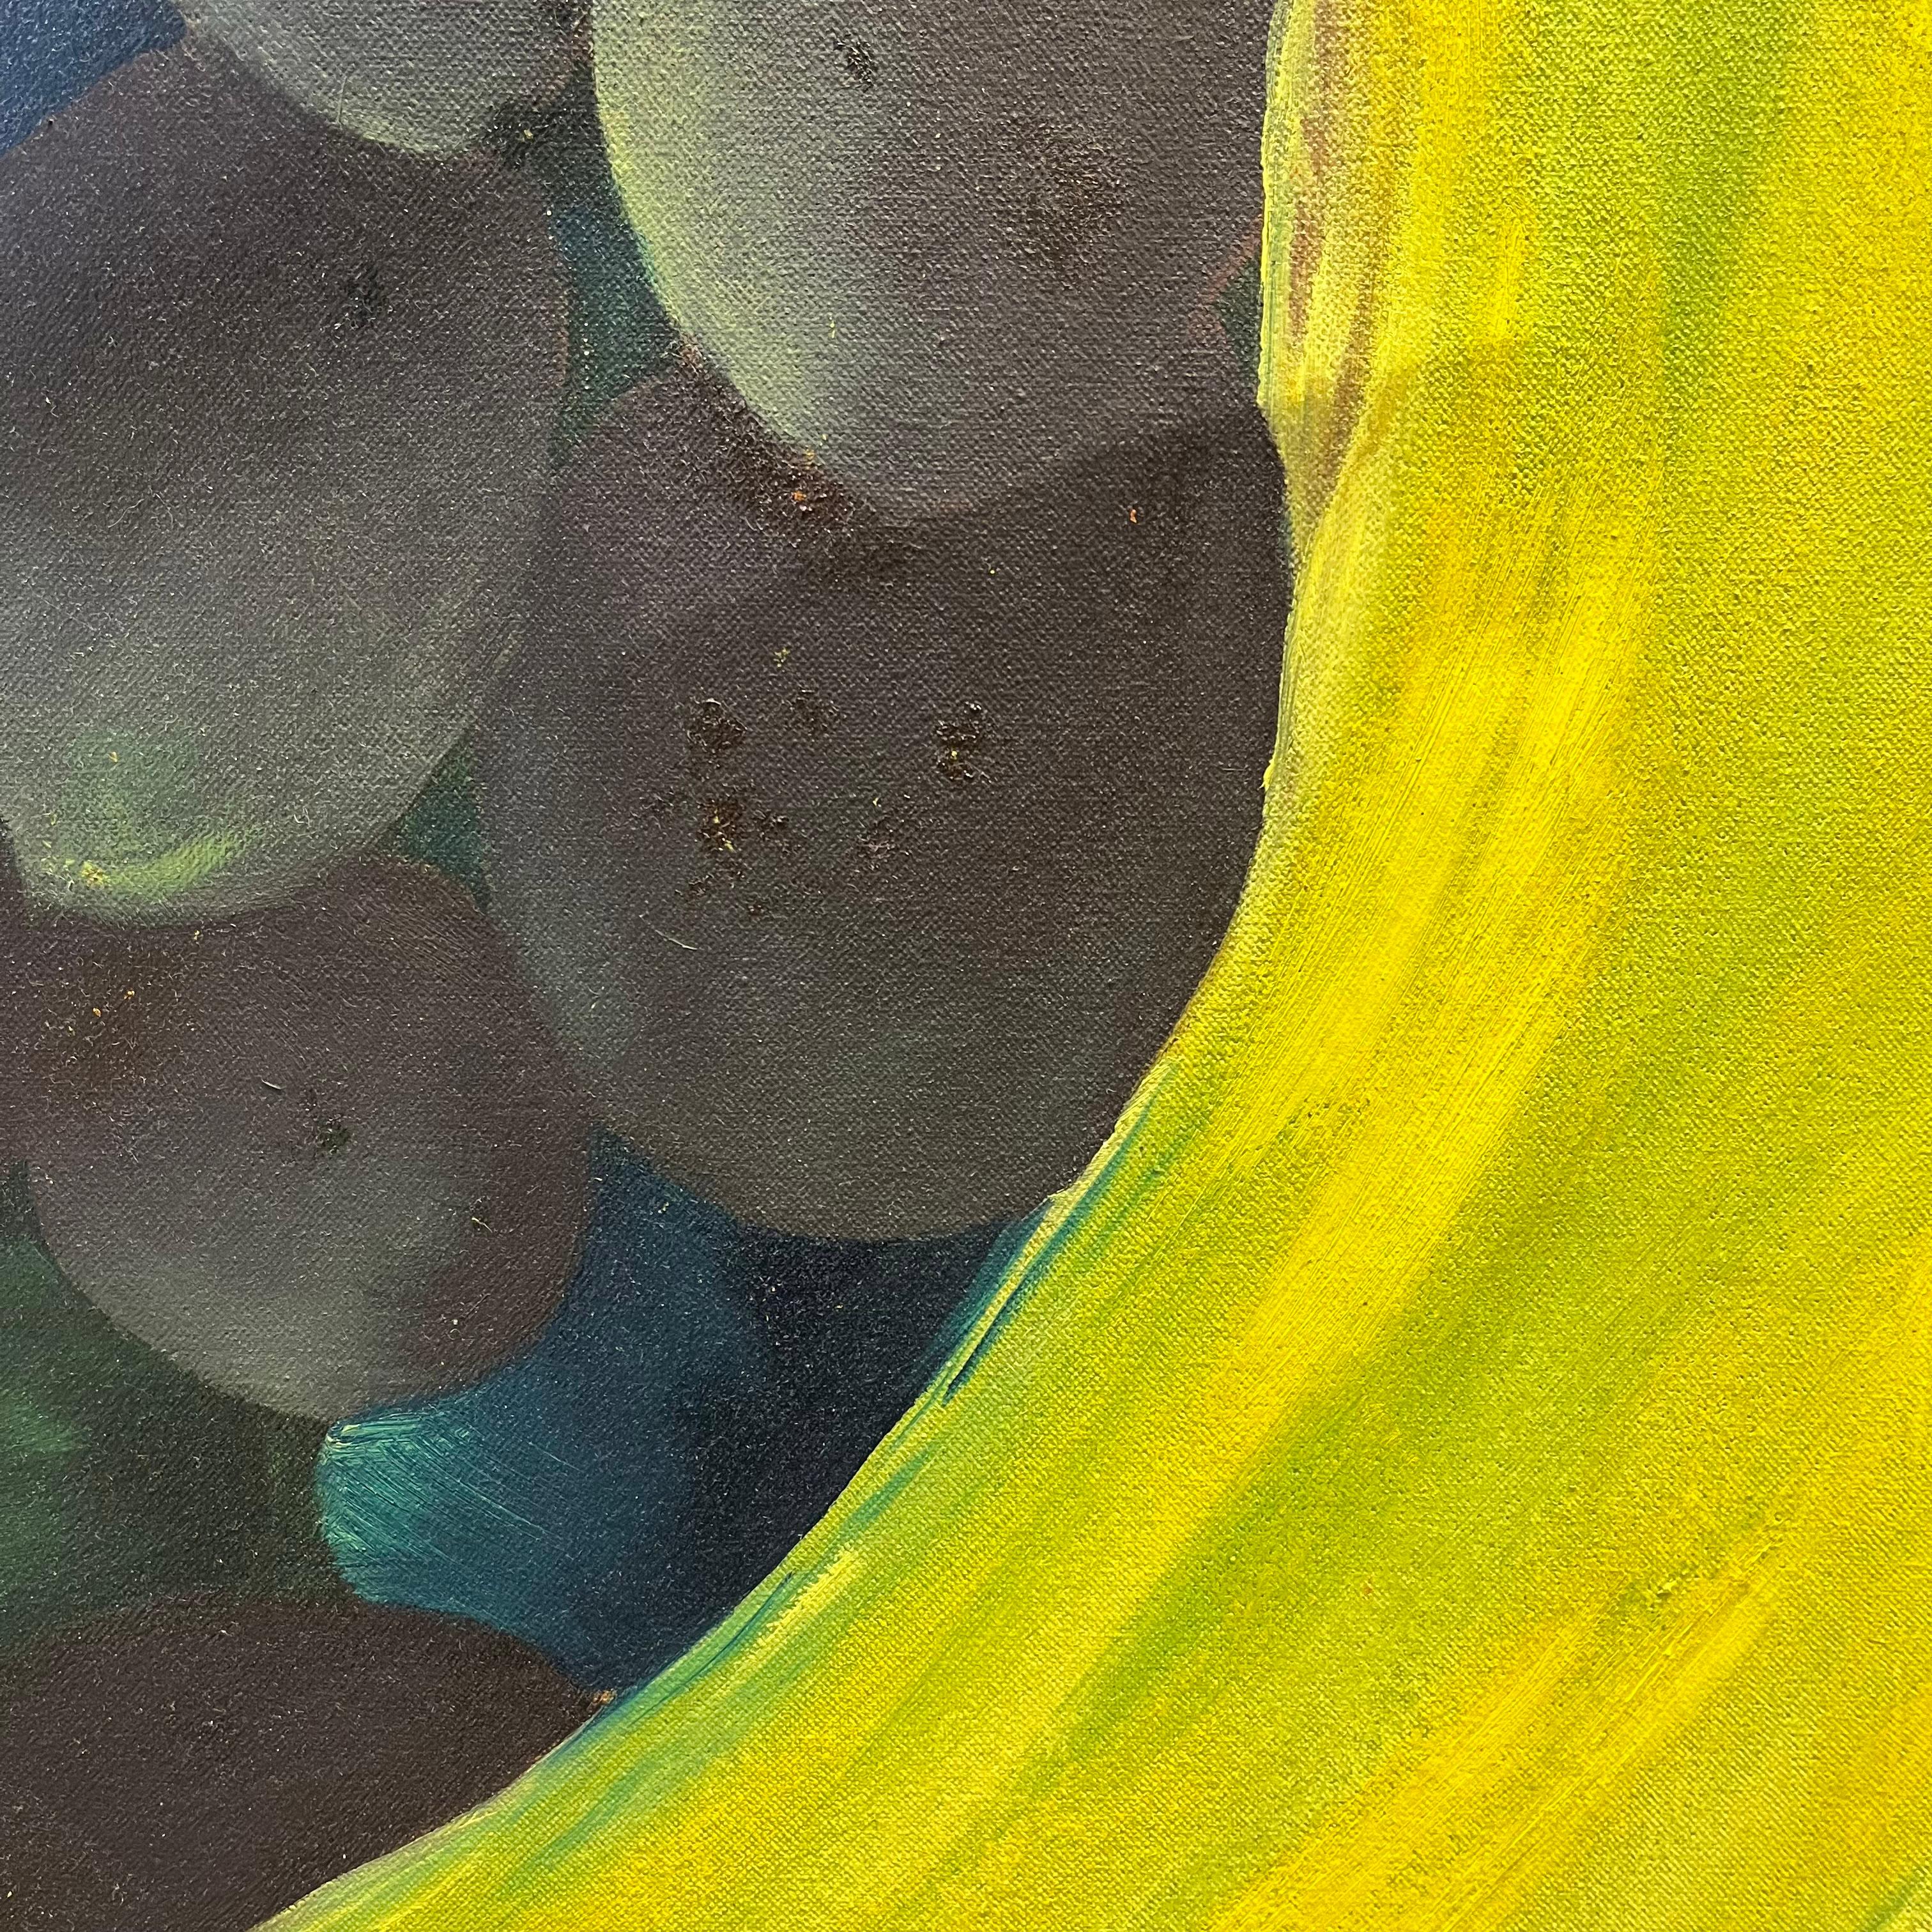 Pintura de Jeff Engberg con las siguientes dimensiones: 100 x 100 cm
Técnica: Óleo sobre tela

